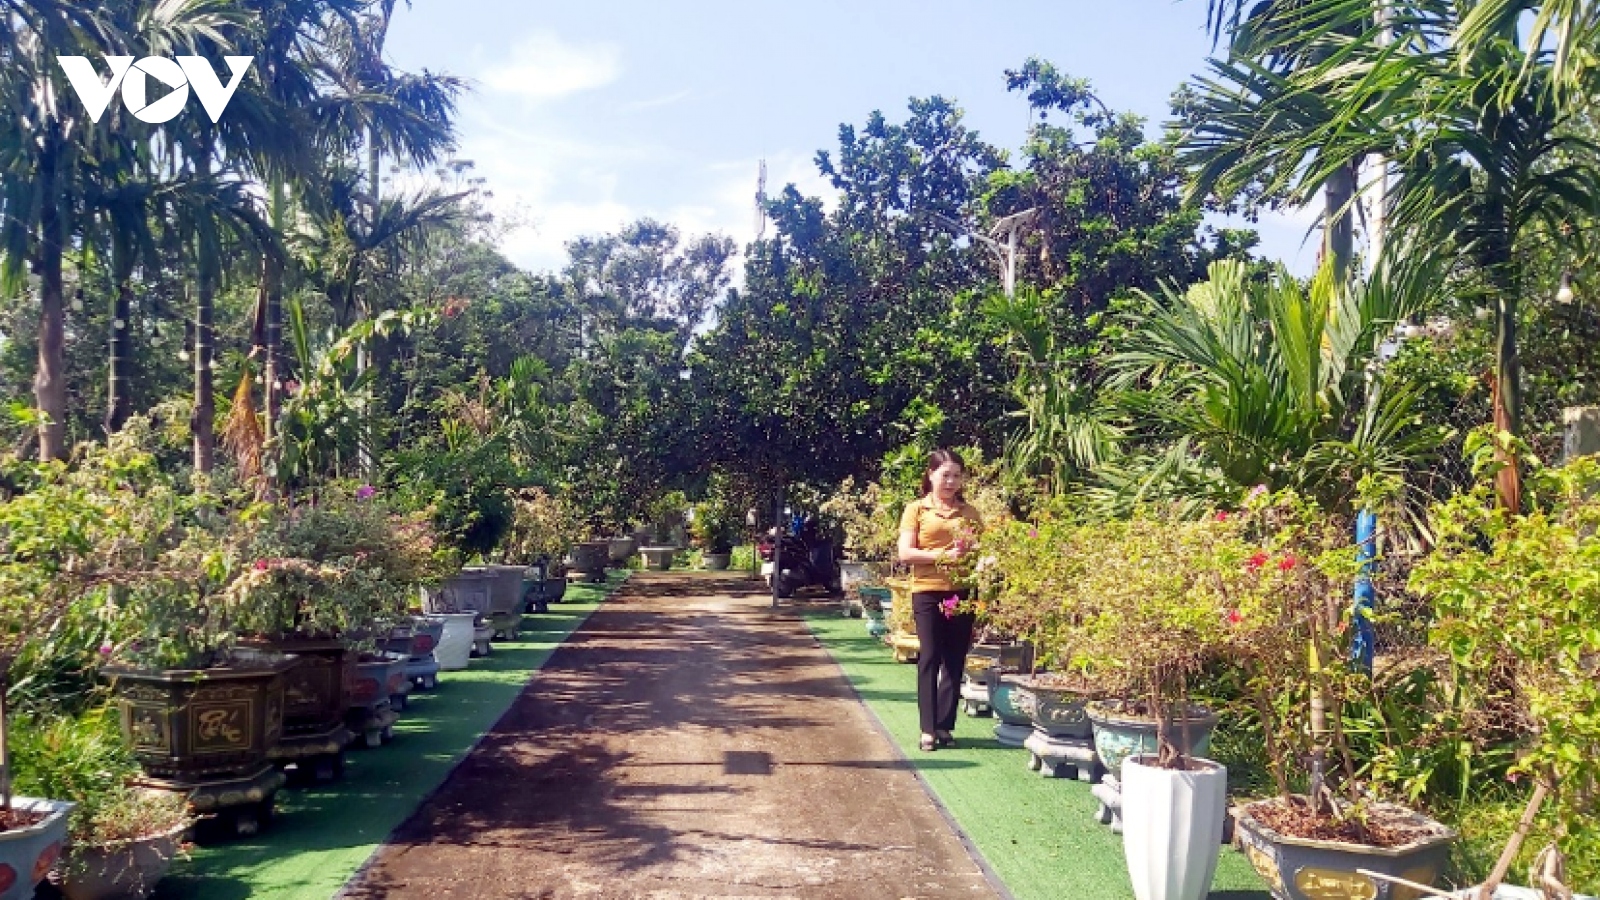 Mô hình vườn mẫu ở Quảng Nam đang mang lại hiệu quả kinh tế cao